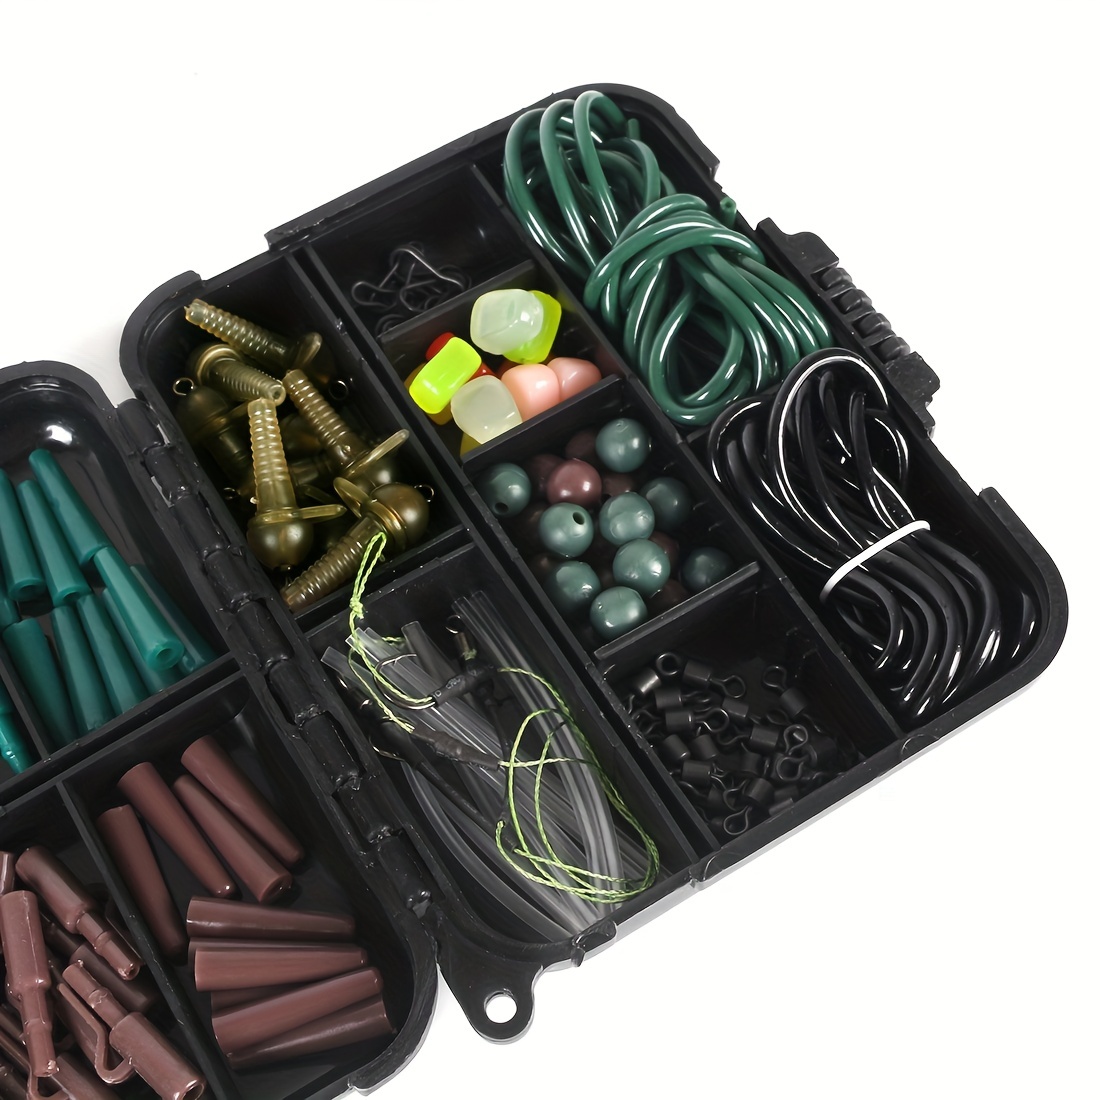 Fishing Tackle Kits in Fishing Tackle Boxes 